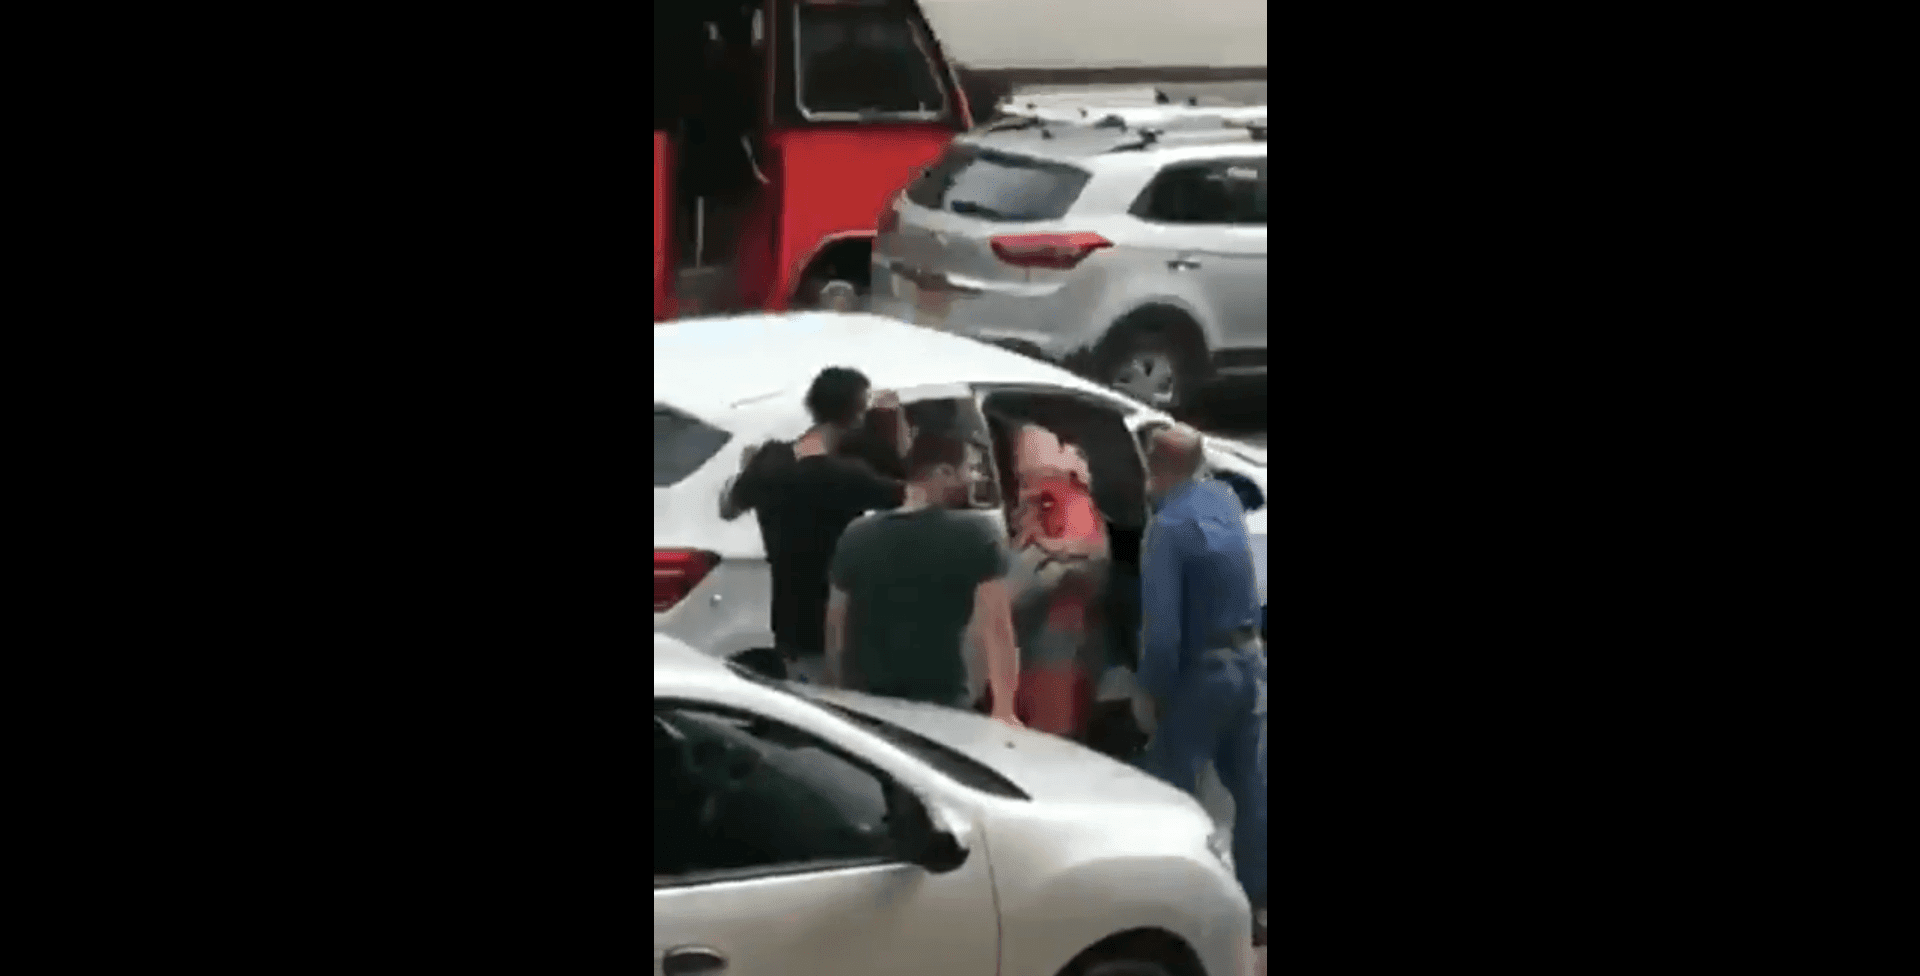 La embarazada se asomó al interior del vehículo. Fuente: Twitter/anonymus_sin